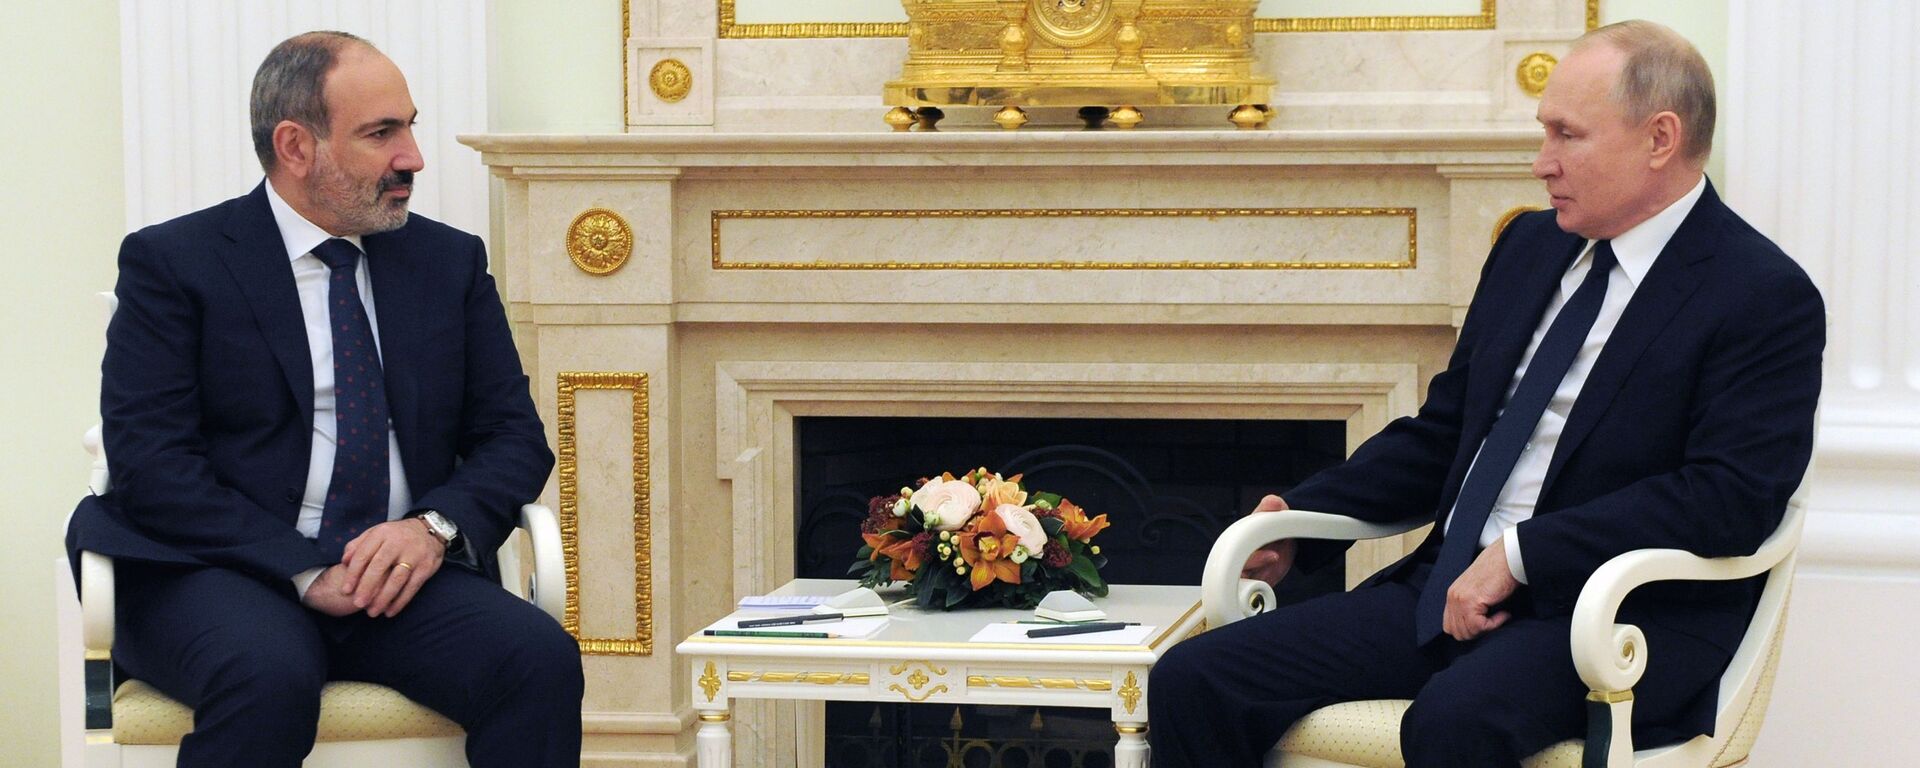 Президент РФ В. Путин провел встречу с премьер-министром Армении Н. Пашиняном - Sputnik Грузия, 1920, 07.04.2021